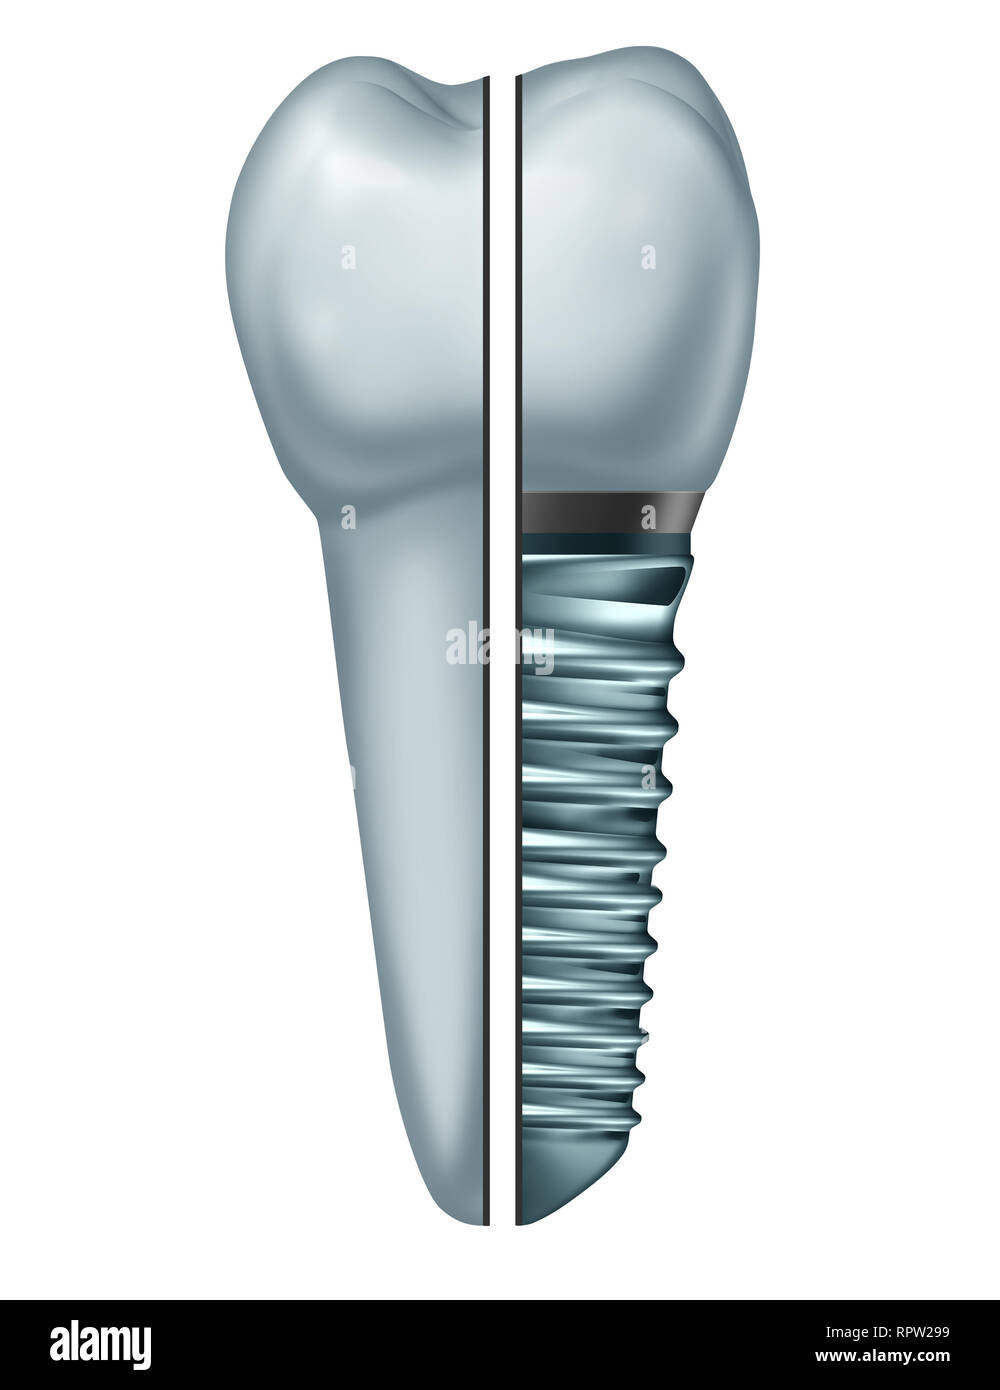 Zahnimplantat Zahn oder endosseous Zahn prothetischen Vergleich mit einer kieferorthopädischen Krone abutement und Metall auf einem weißen Hintergrund. Stockfoto